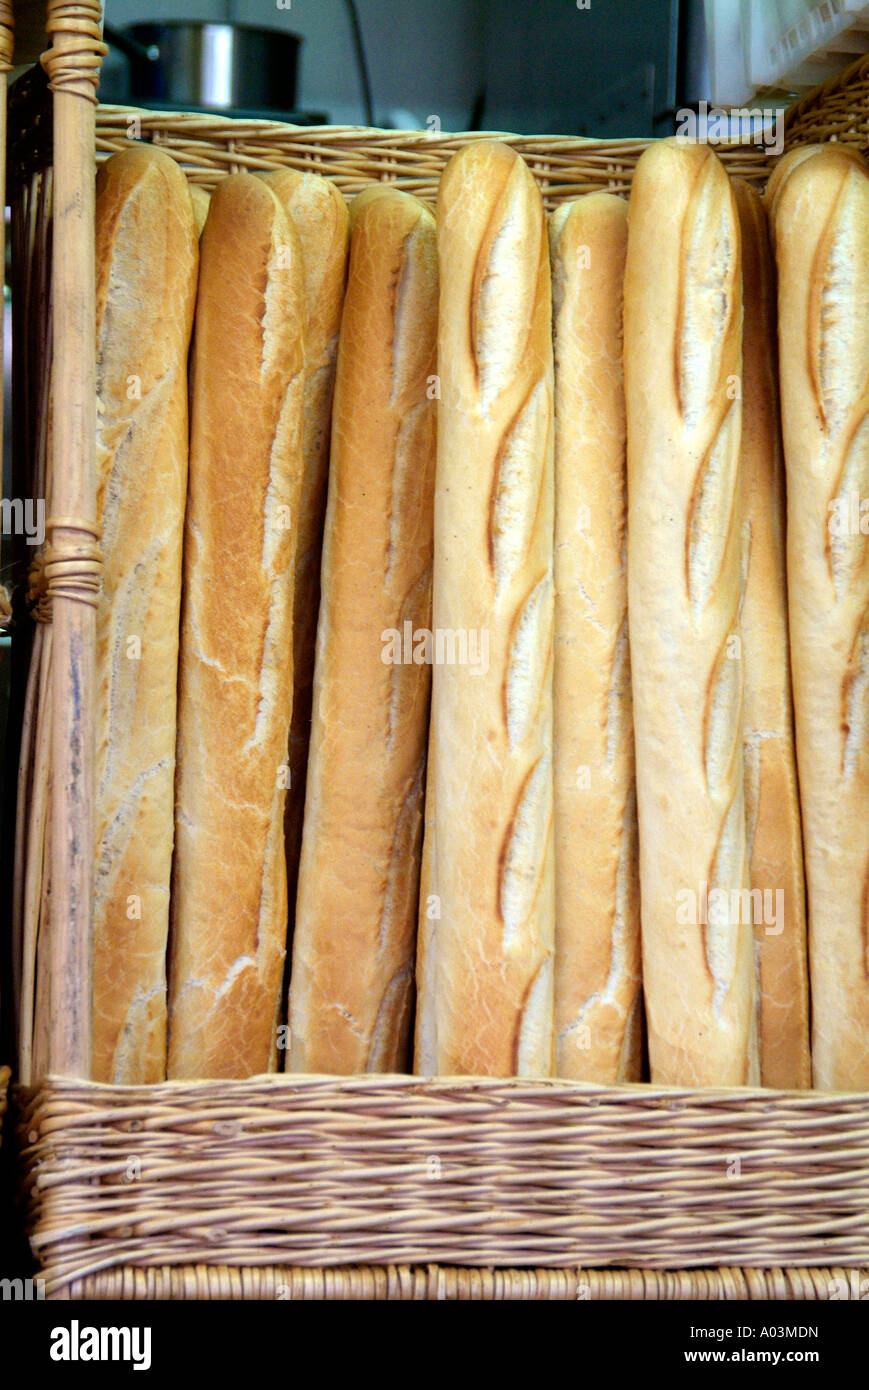 Brot-Stick Französisch Frankreich braunen Quadrat auf Korb frisch gebacken frisch knusprige Kruste Wicker Korb Baguette Schmerzen Laib Brote Stockfoto